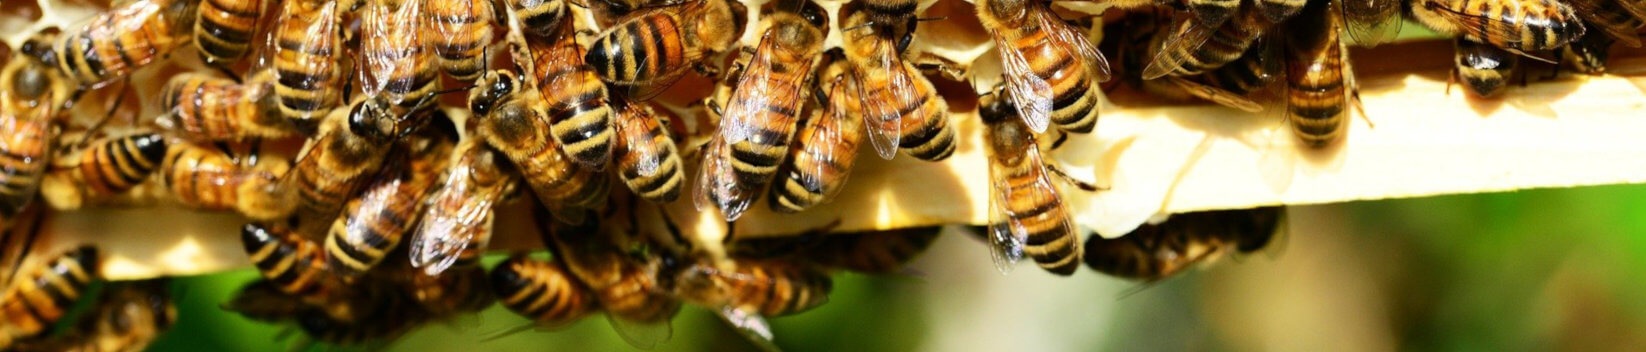 Bienenmartins Imkerei